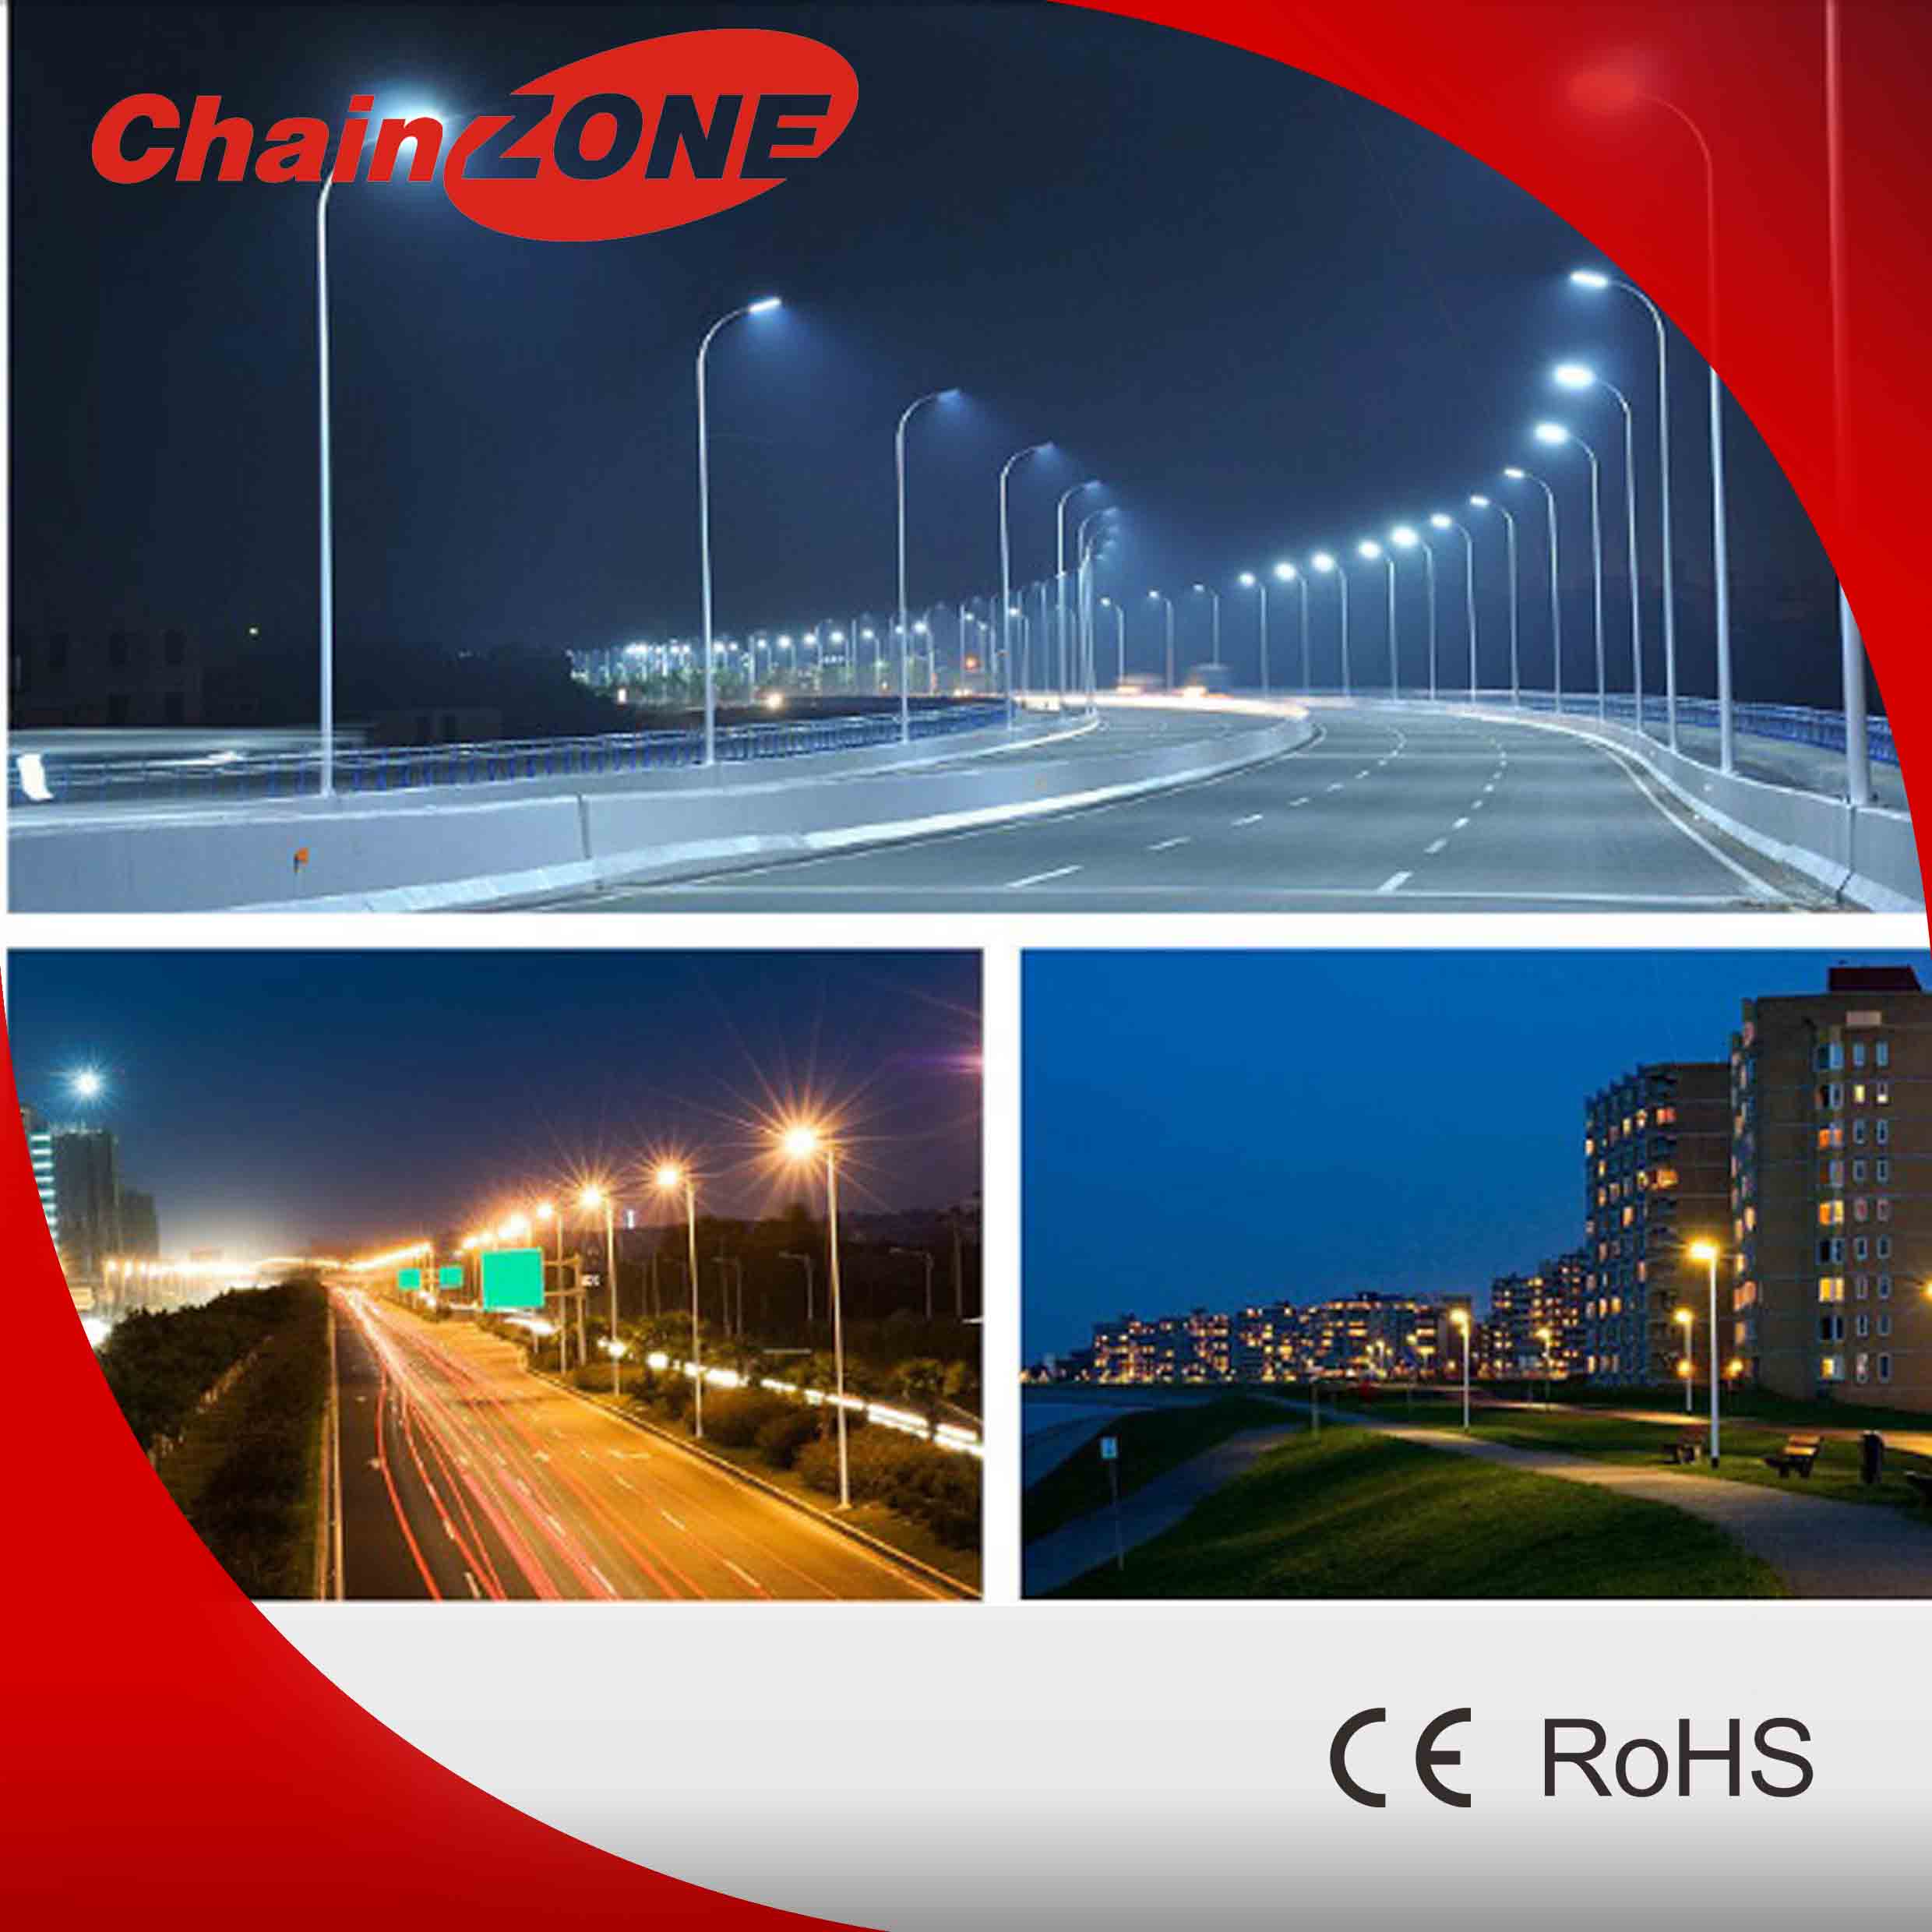 Chainzones LED Light, solar LED Road Light for parking lot